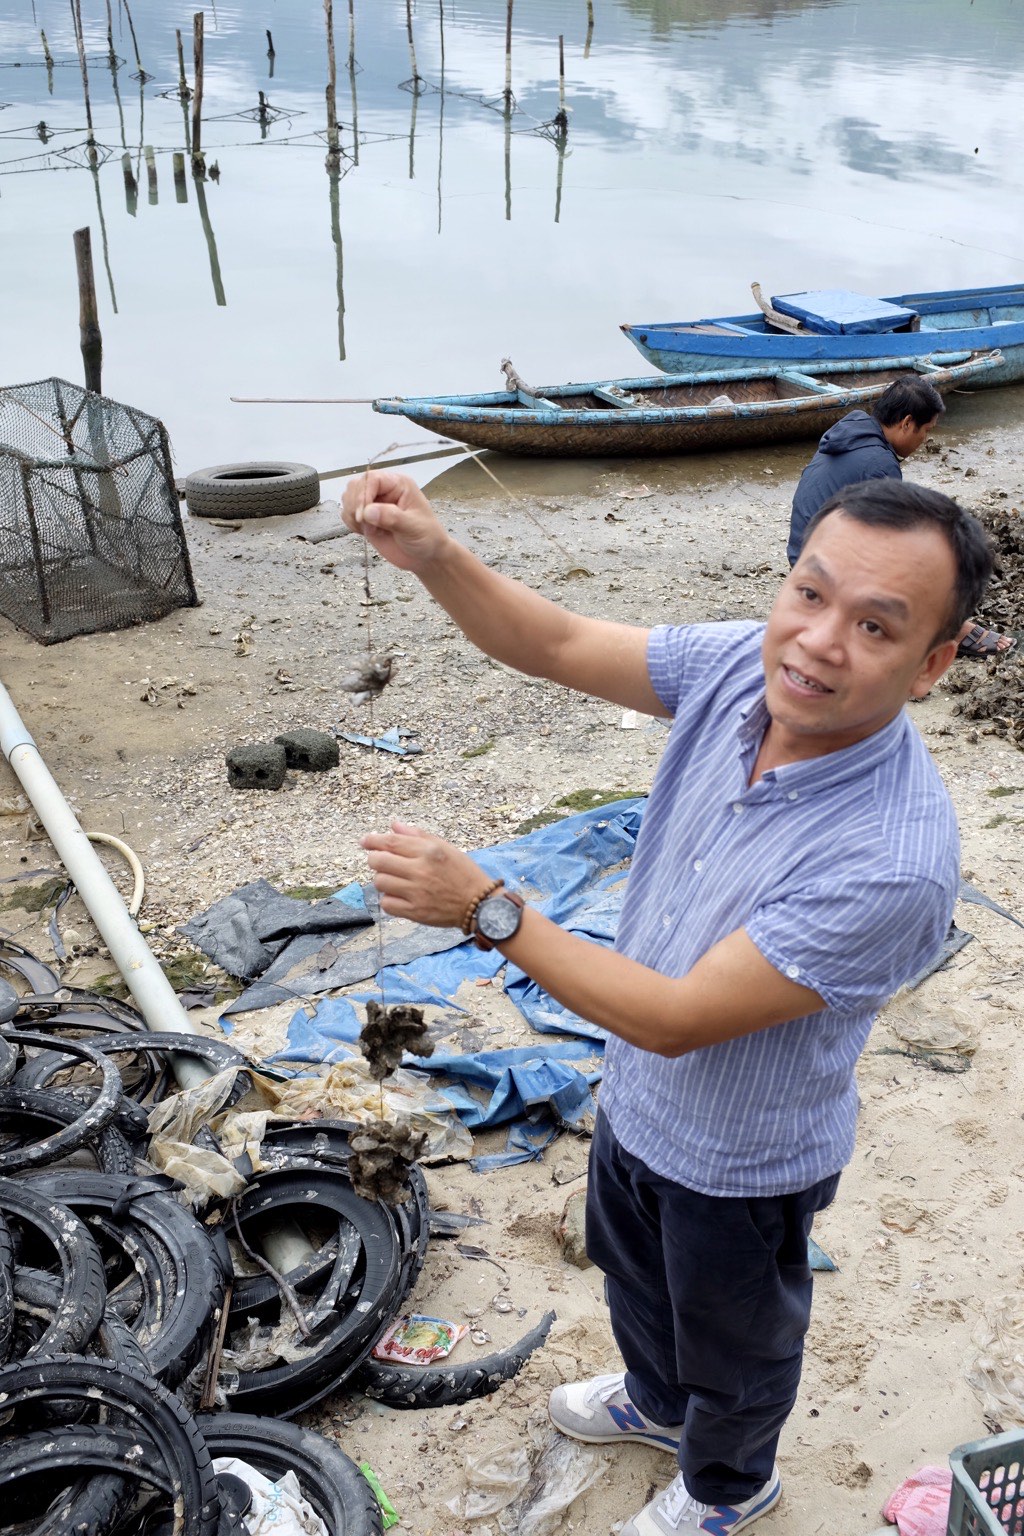 Thui explaining Oysters